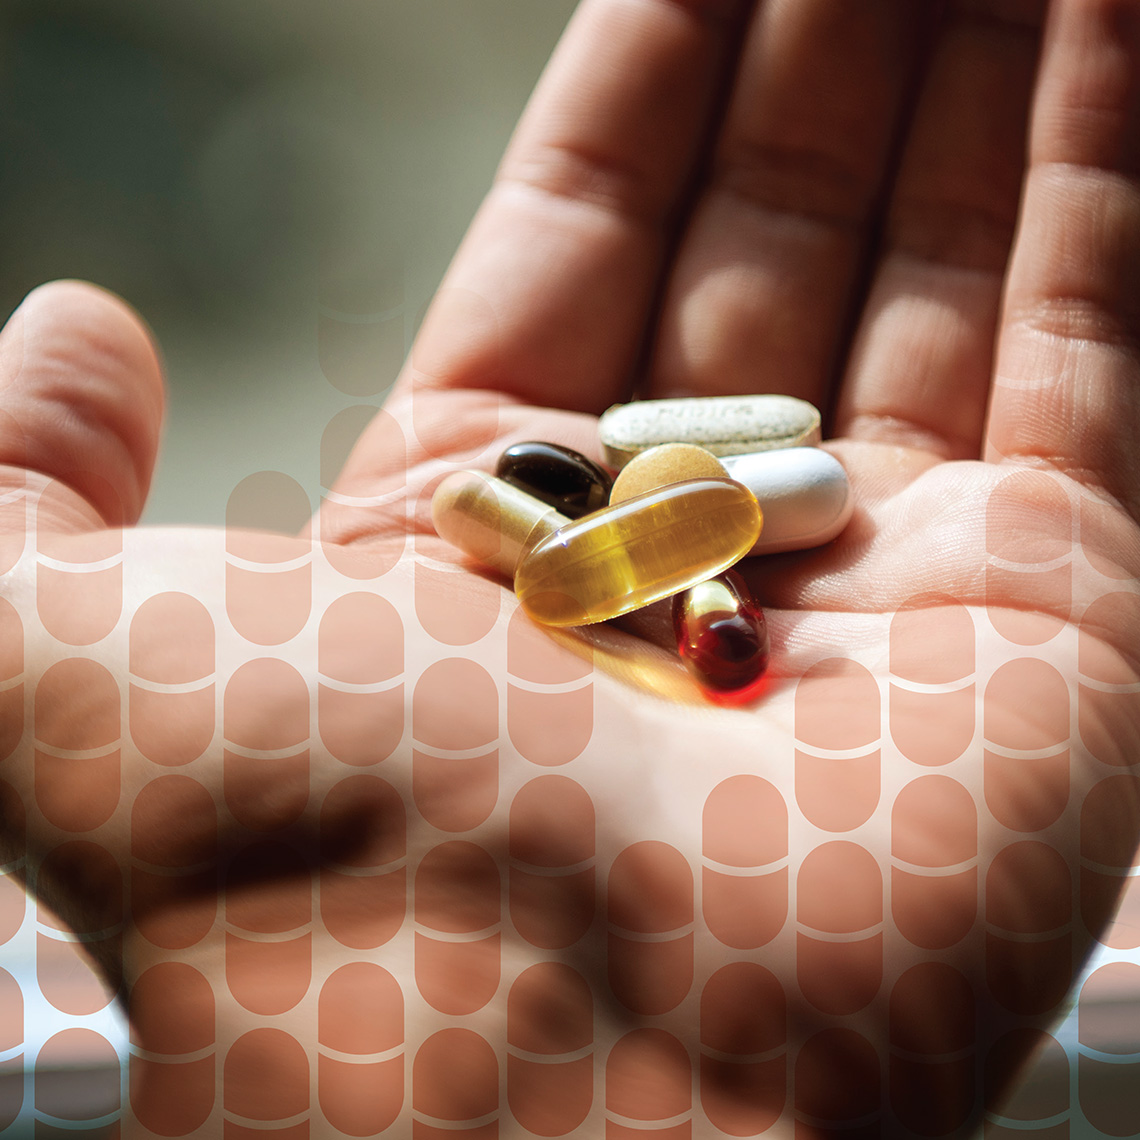 closeup of a hand holding an assortment of pills